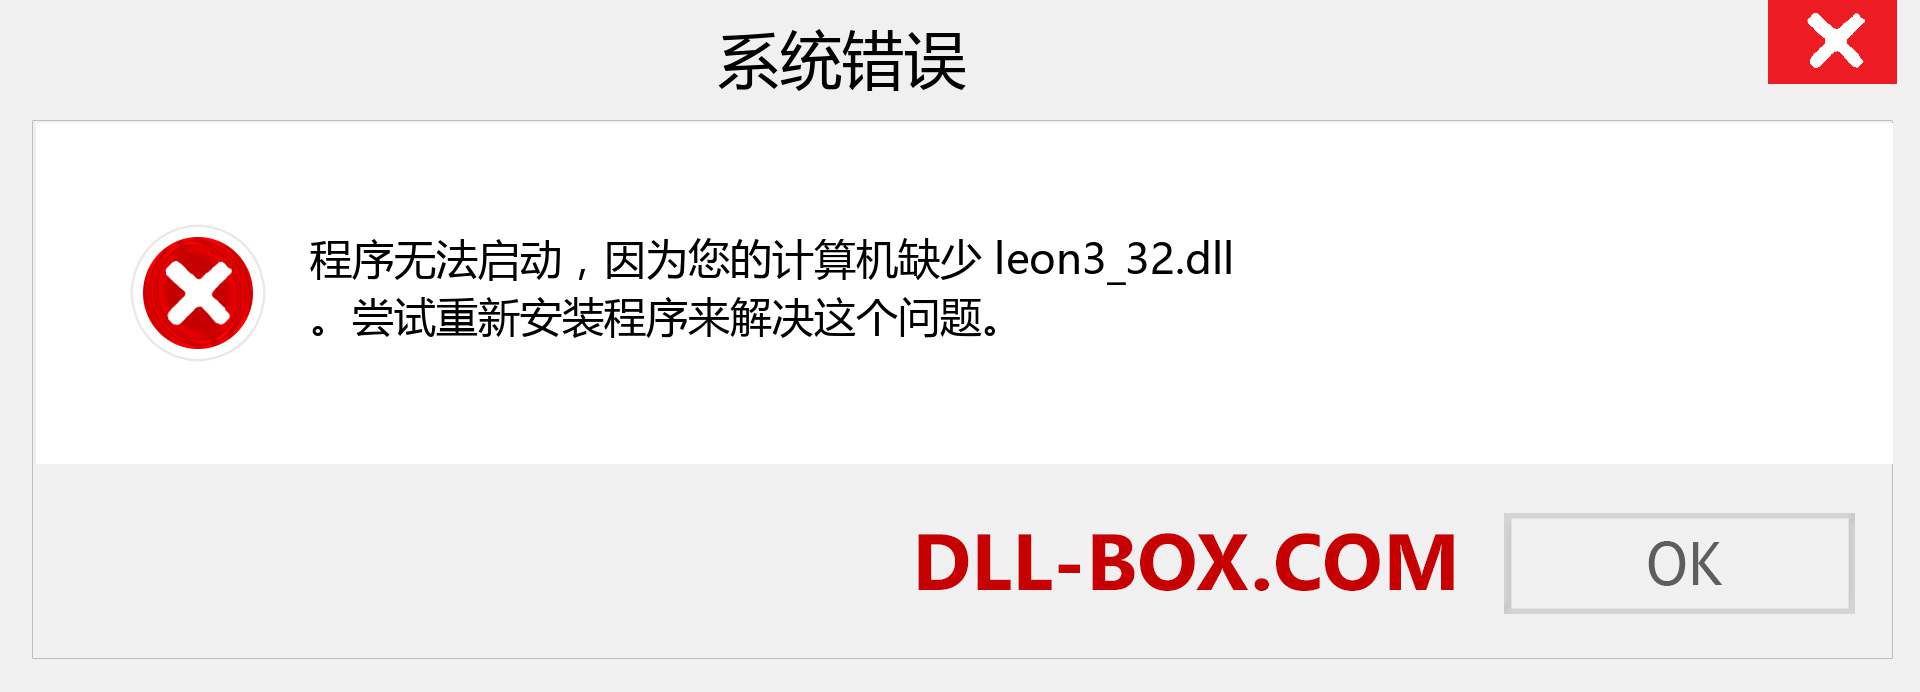 leon3_32.dll 文件丢失？。 适用于 Windows 7、8、10 的下载 - 修复 Windows、照片、图像上的 leon3_32 dll 丢失错误